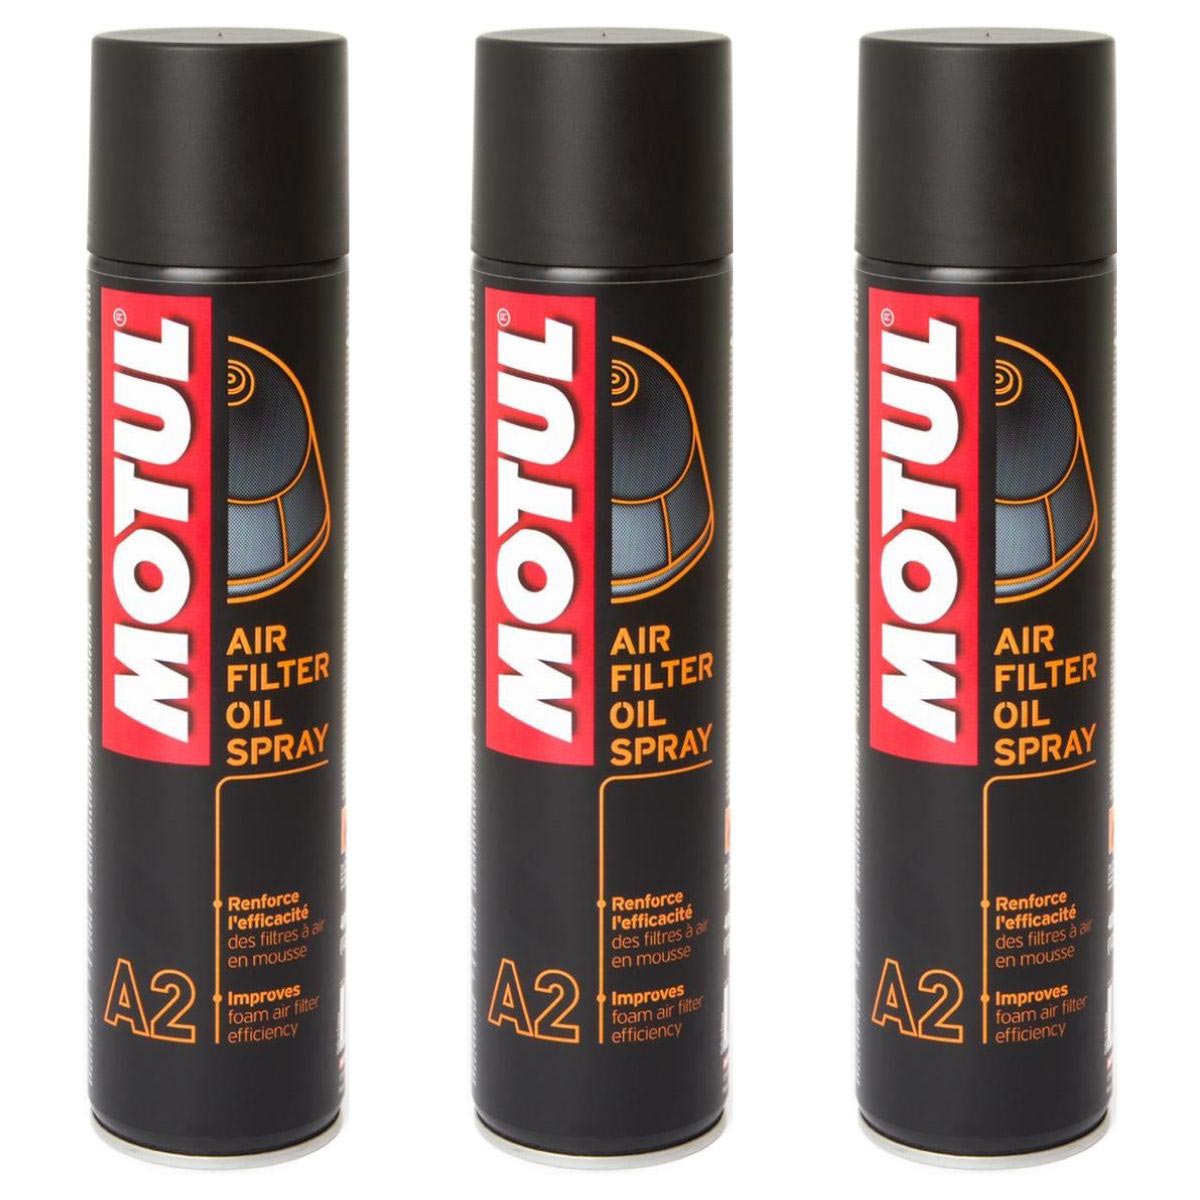 Motul Spray Olio Filtro Aria A2 Set: 3 pezzi, 400 ml ciascuno